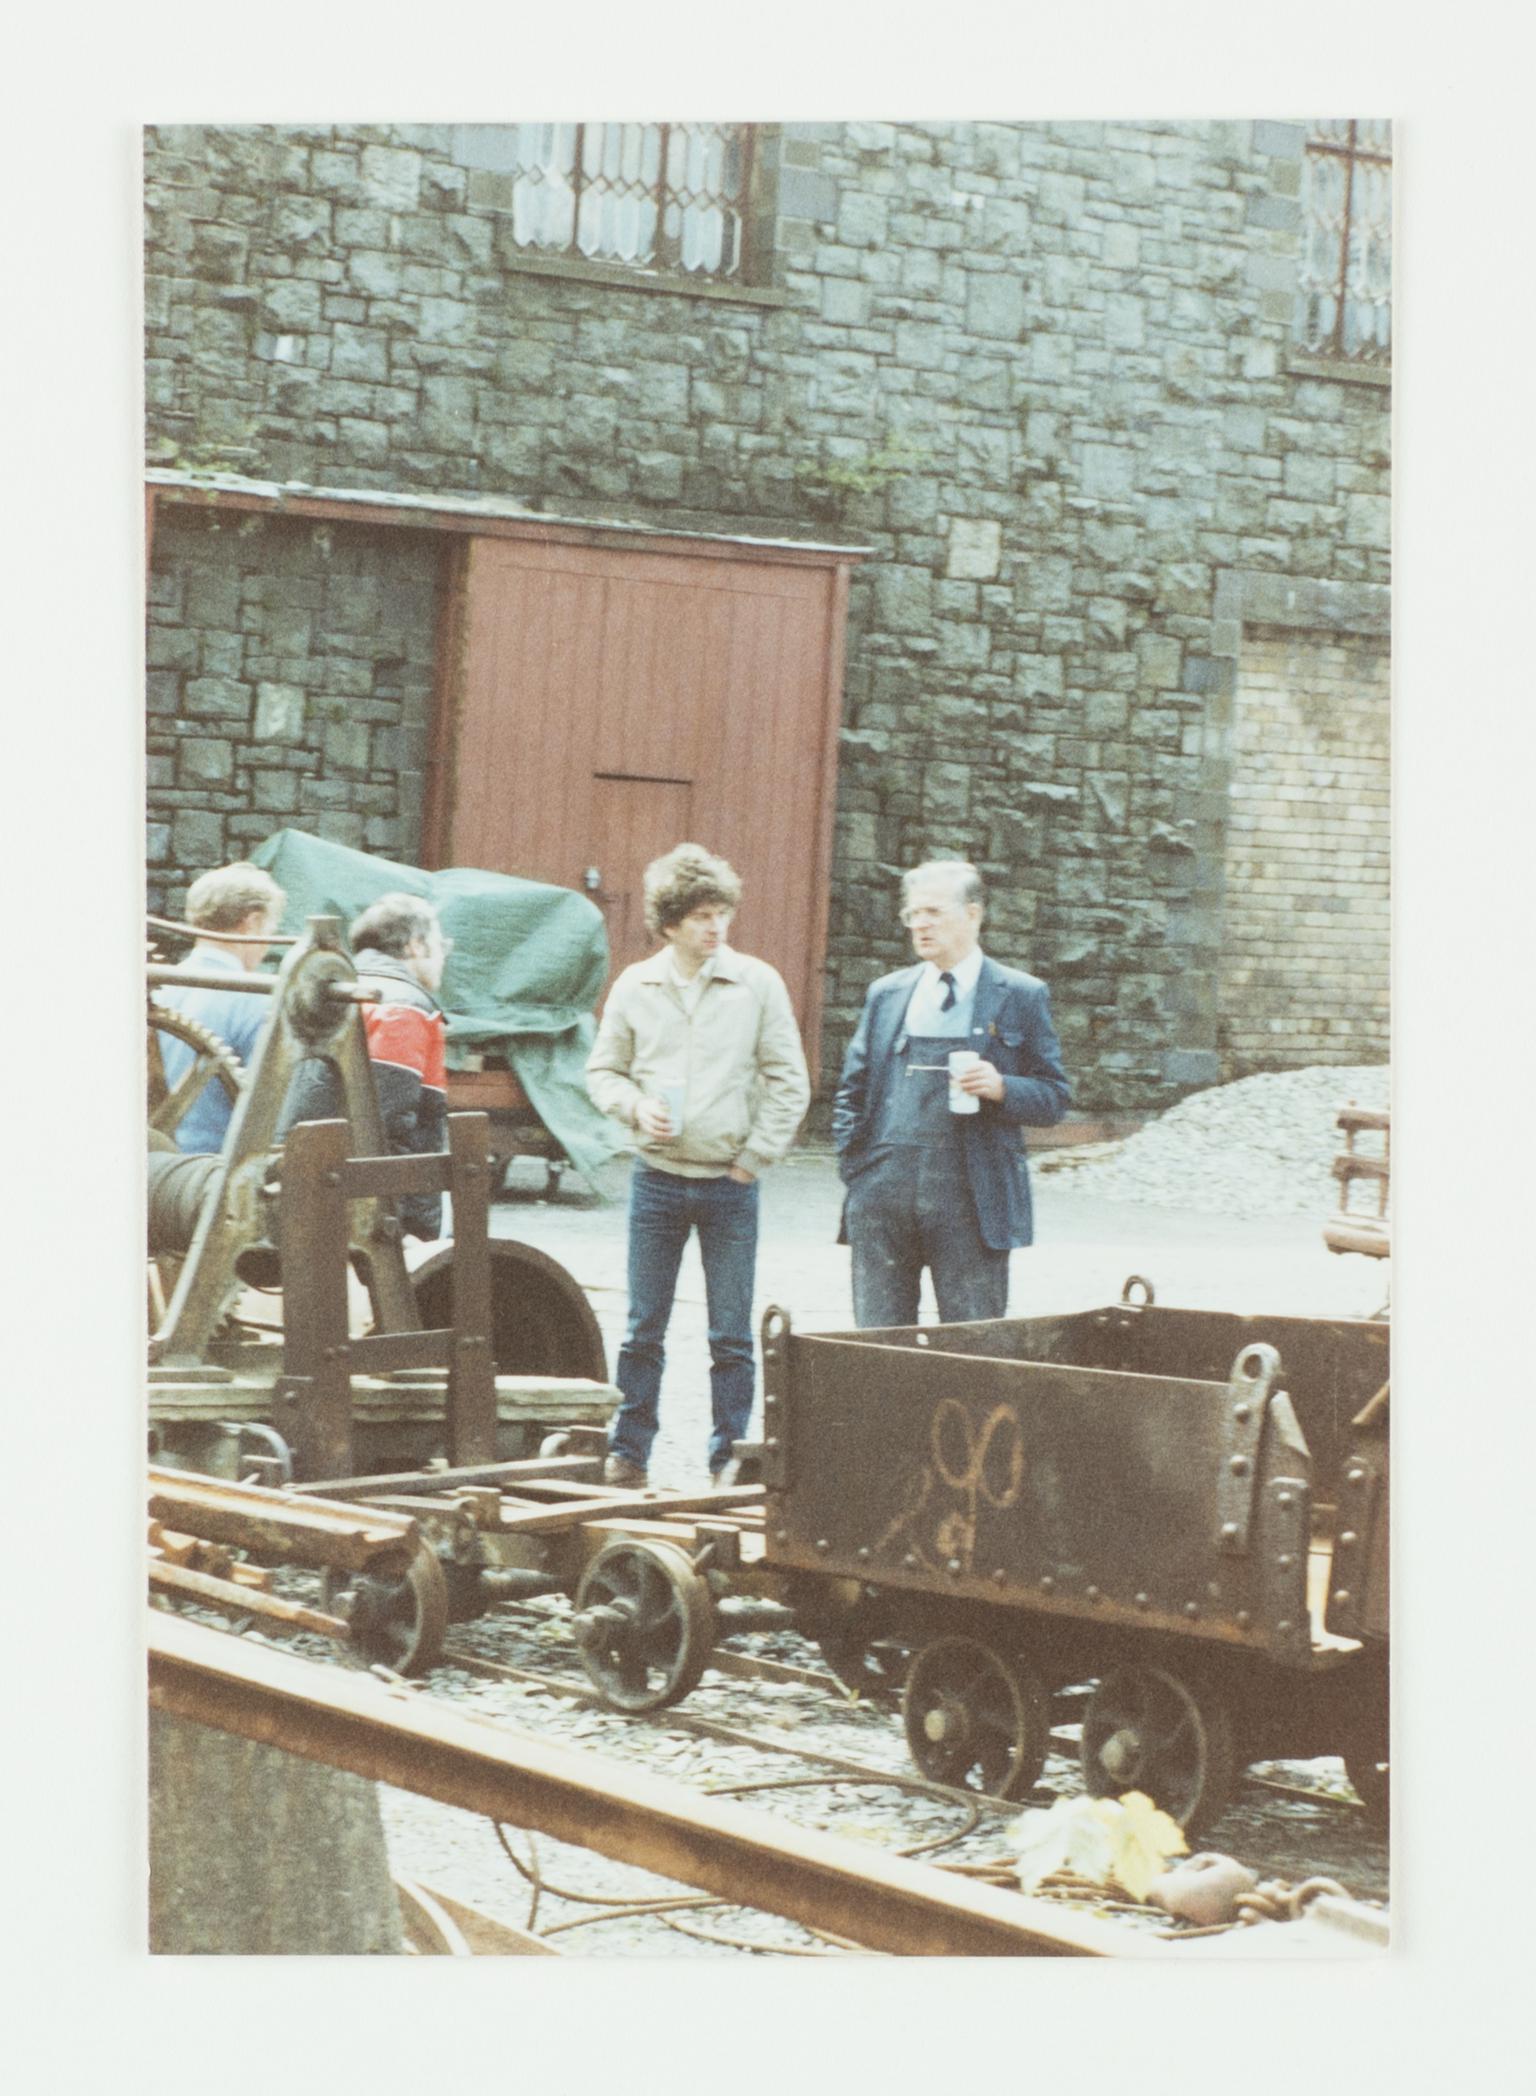 Dinorwig slate quarry reunion 1994, photograph